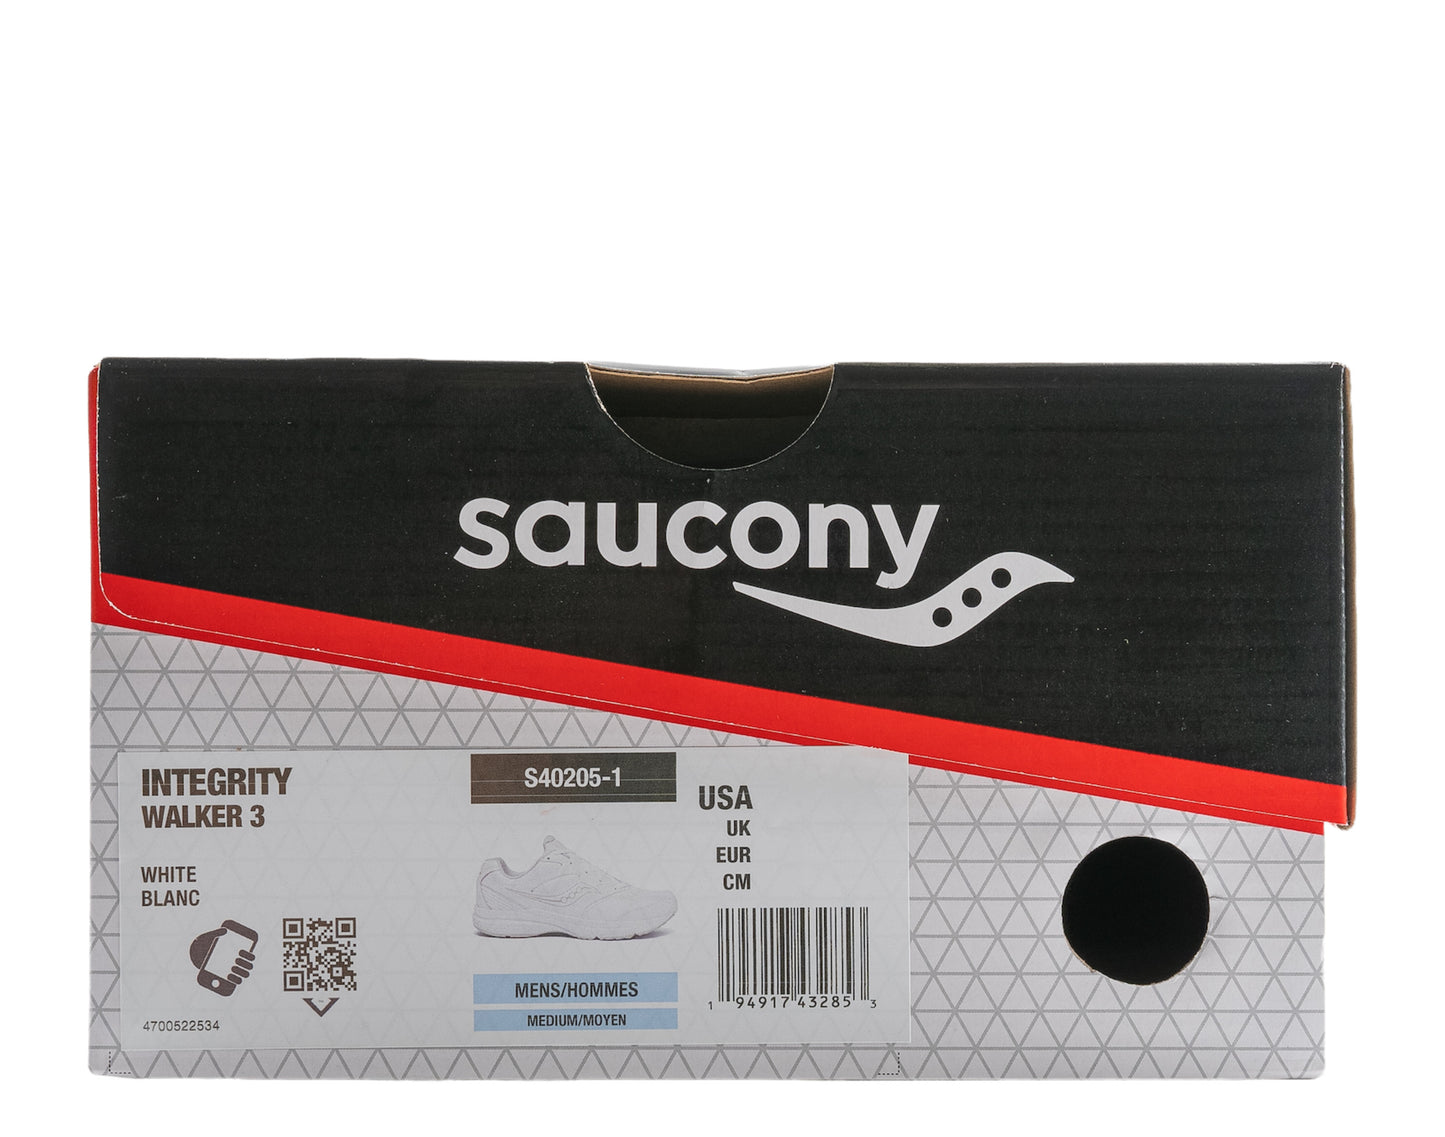 Saucony Integrity Walker 3 Men's Shoes